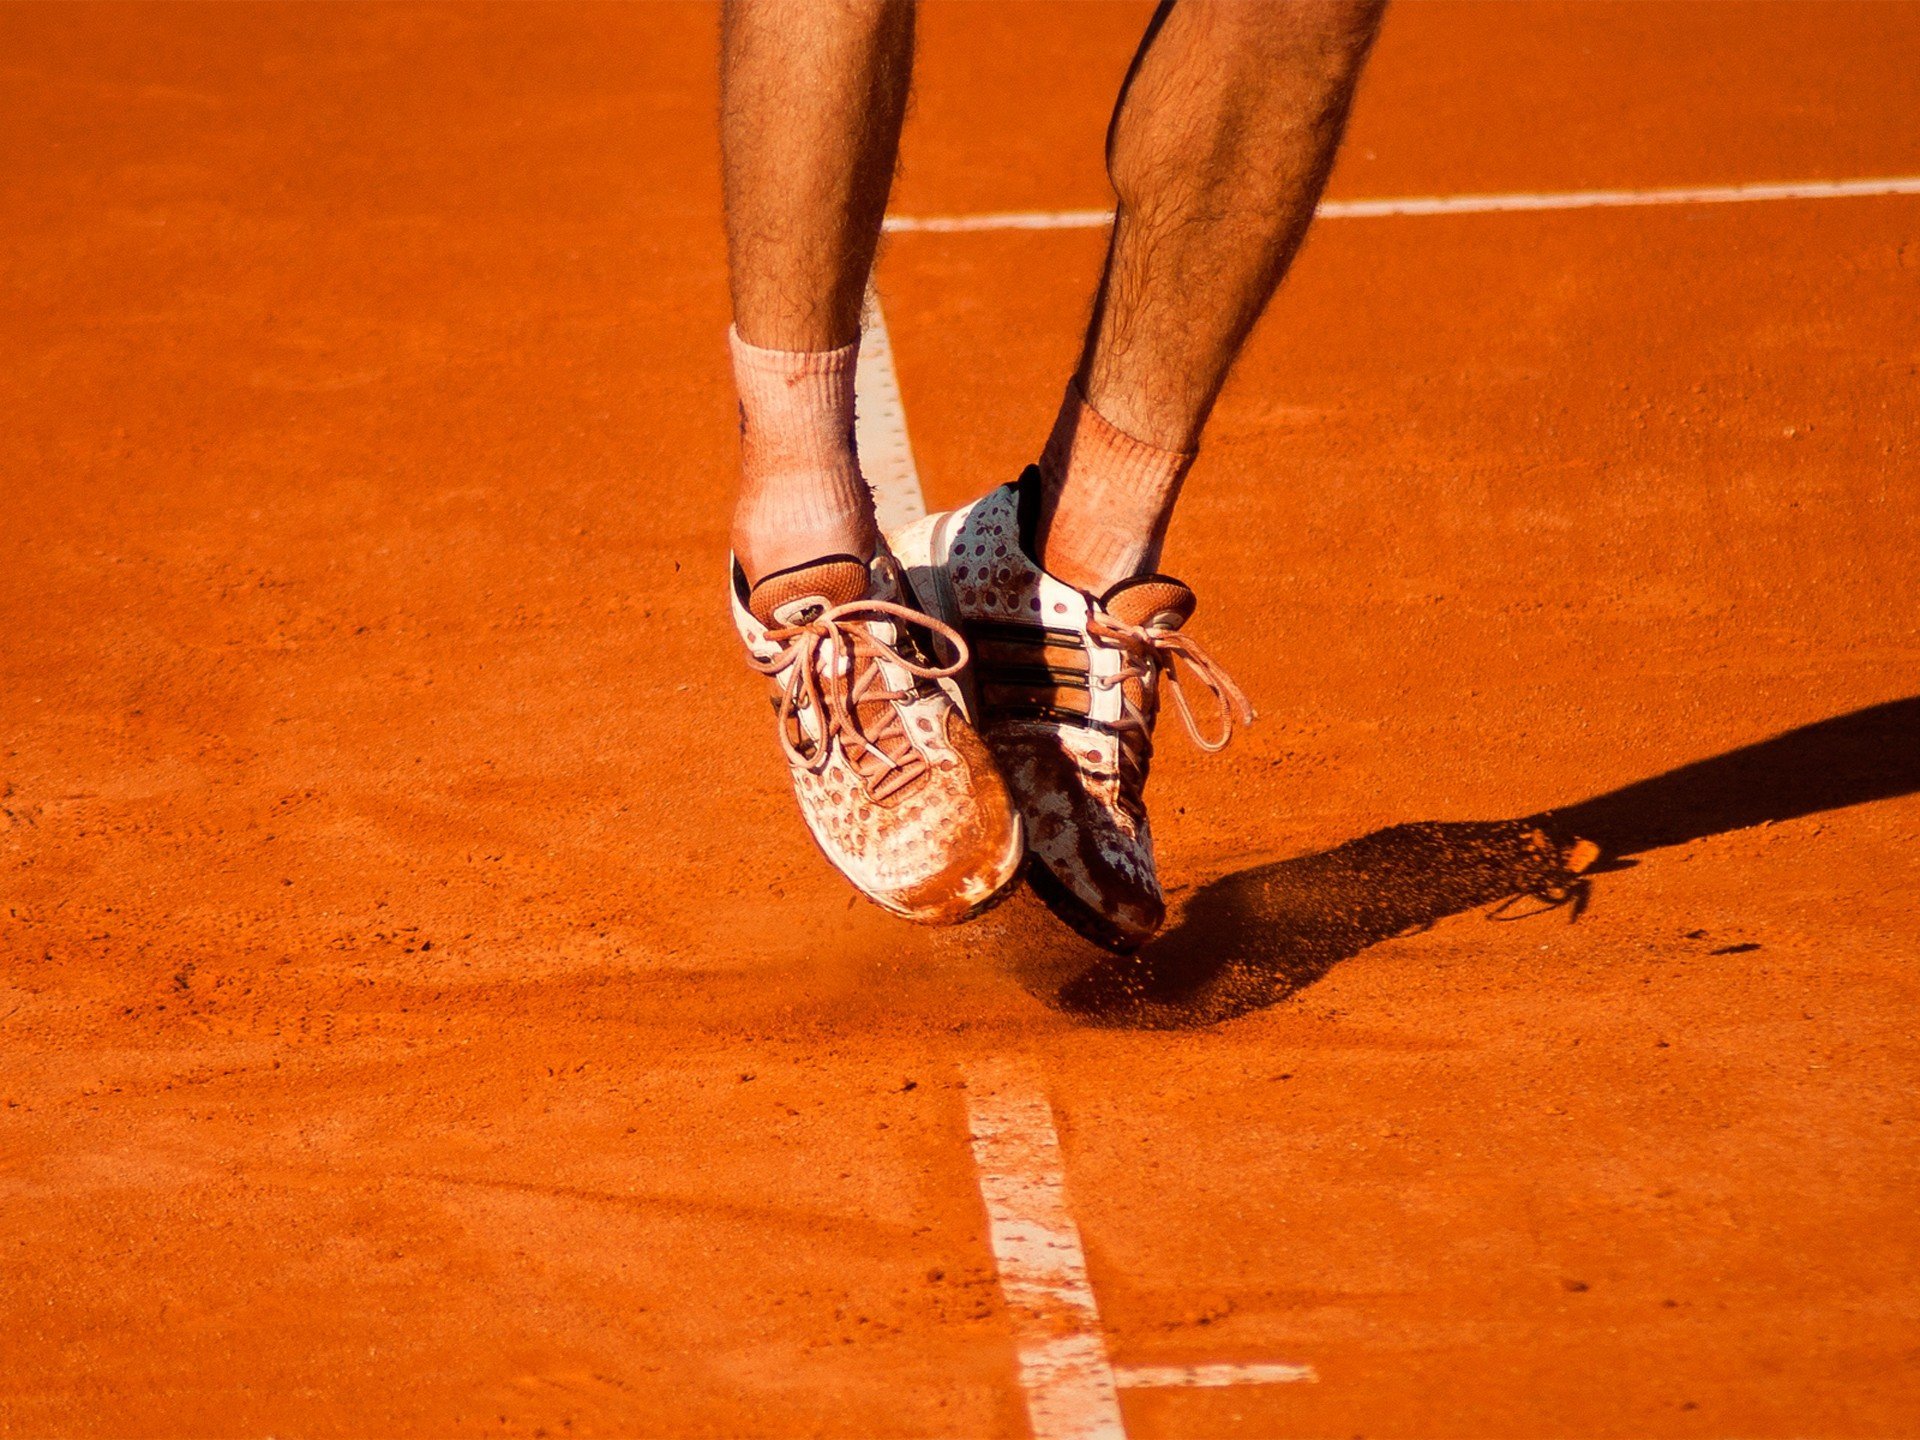 Tennis Füße Sprung - Details